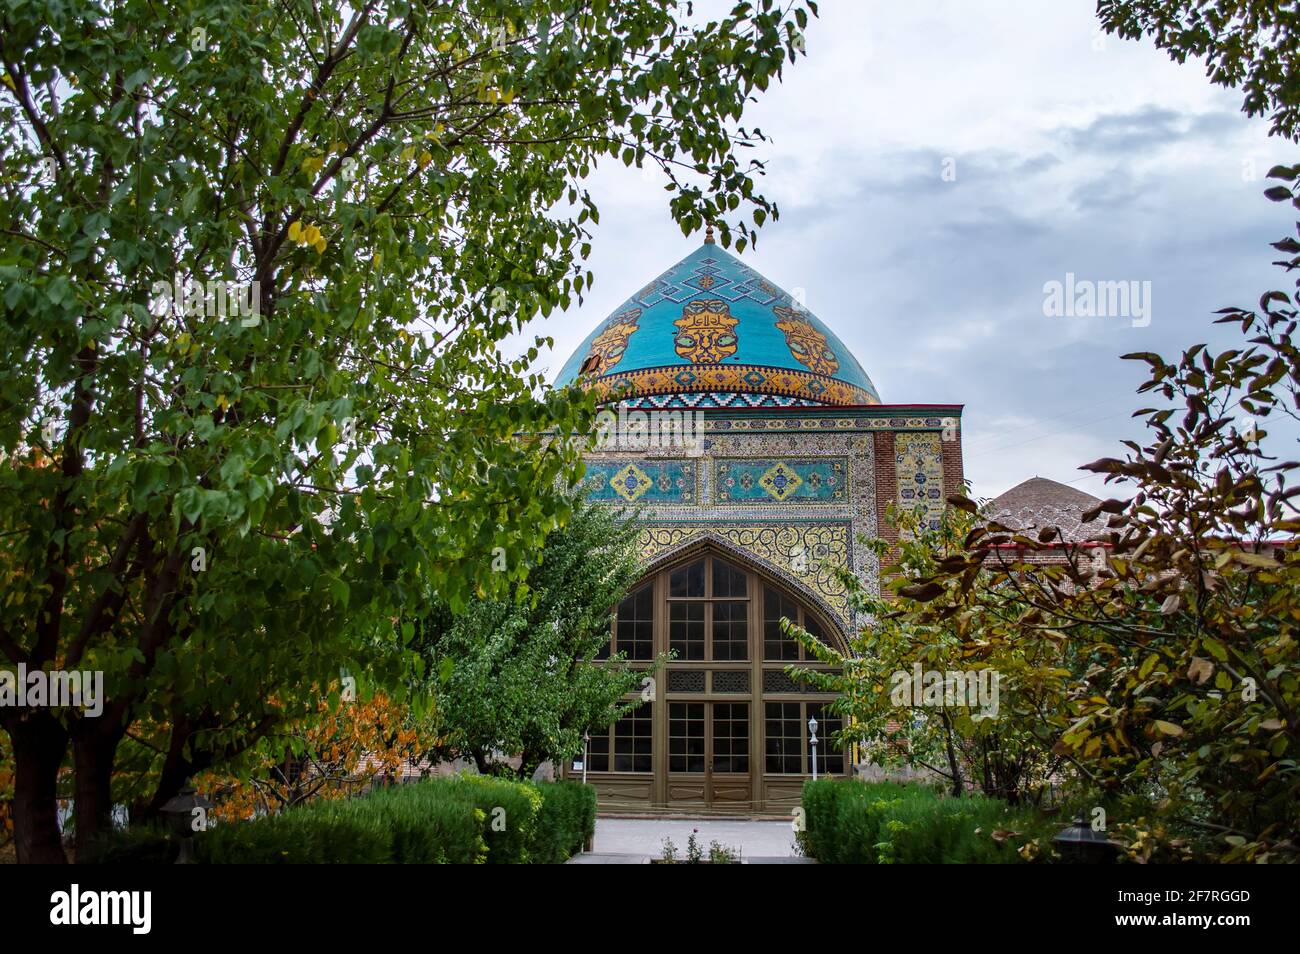 Blaue Moschee, eine persische Moschee in Jerewan, Armenien. Die Blaue Moschee ist die einzige aktive Moschee in Armenien. Stockfoto